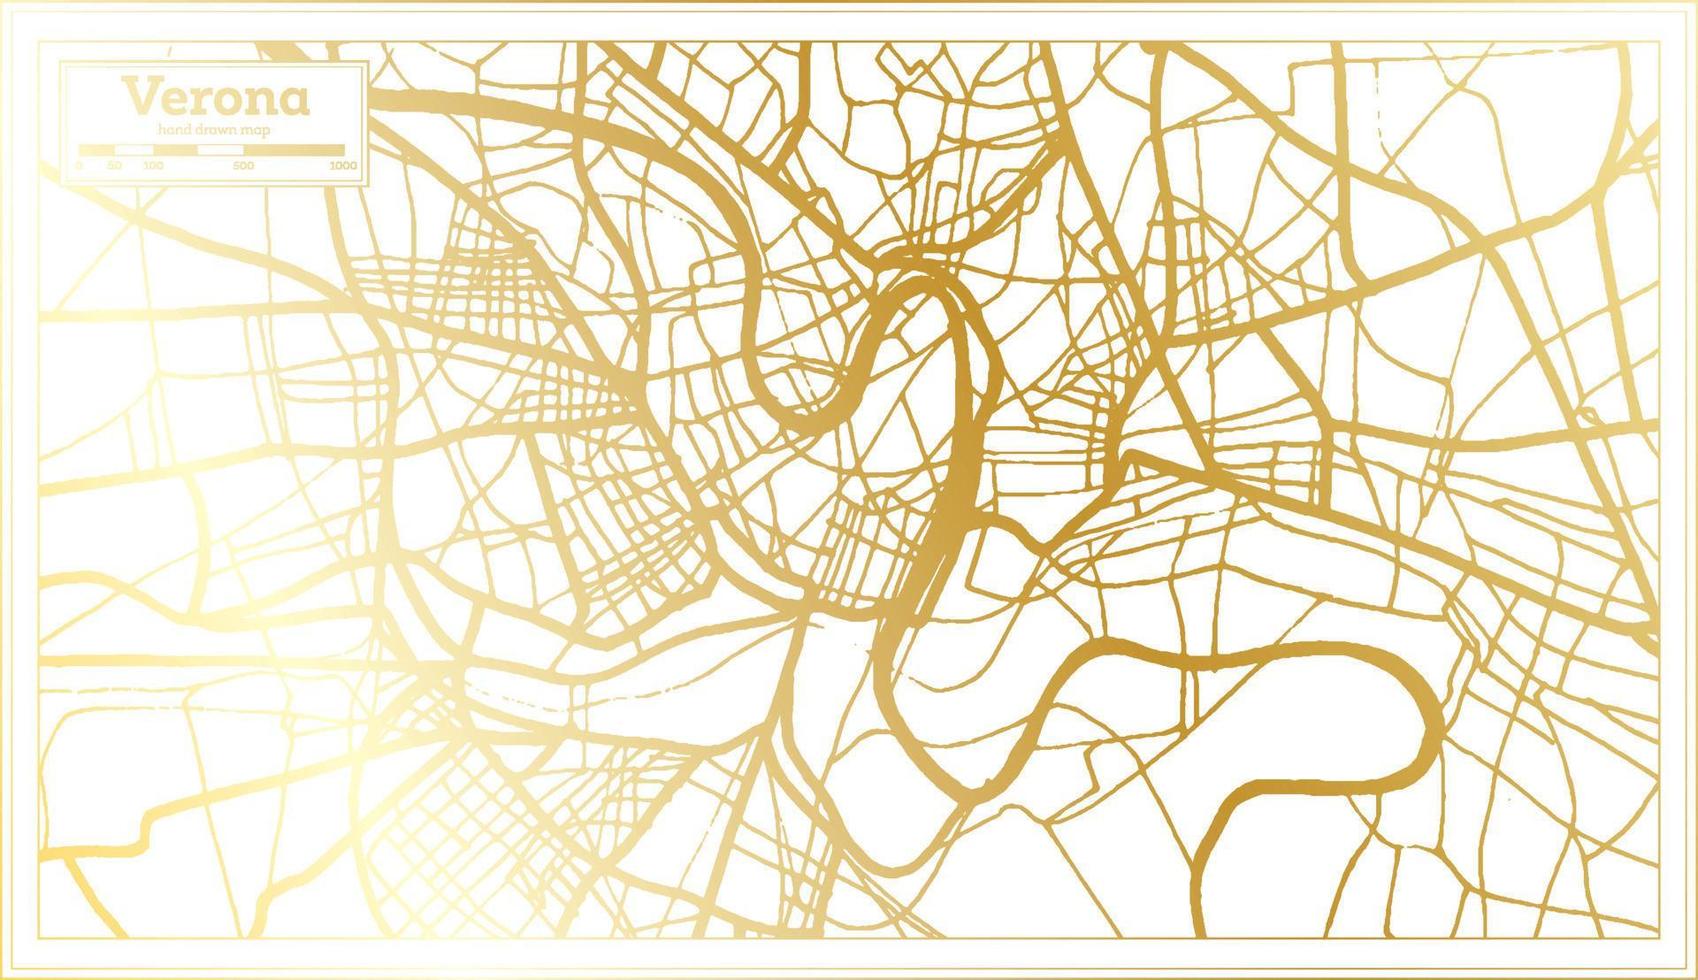 mapa de la ciudad de verona italia en estilo retro en color dorado. esquema del mapa. vector